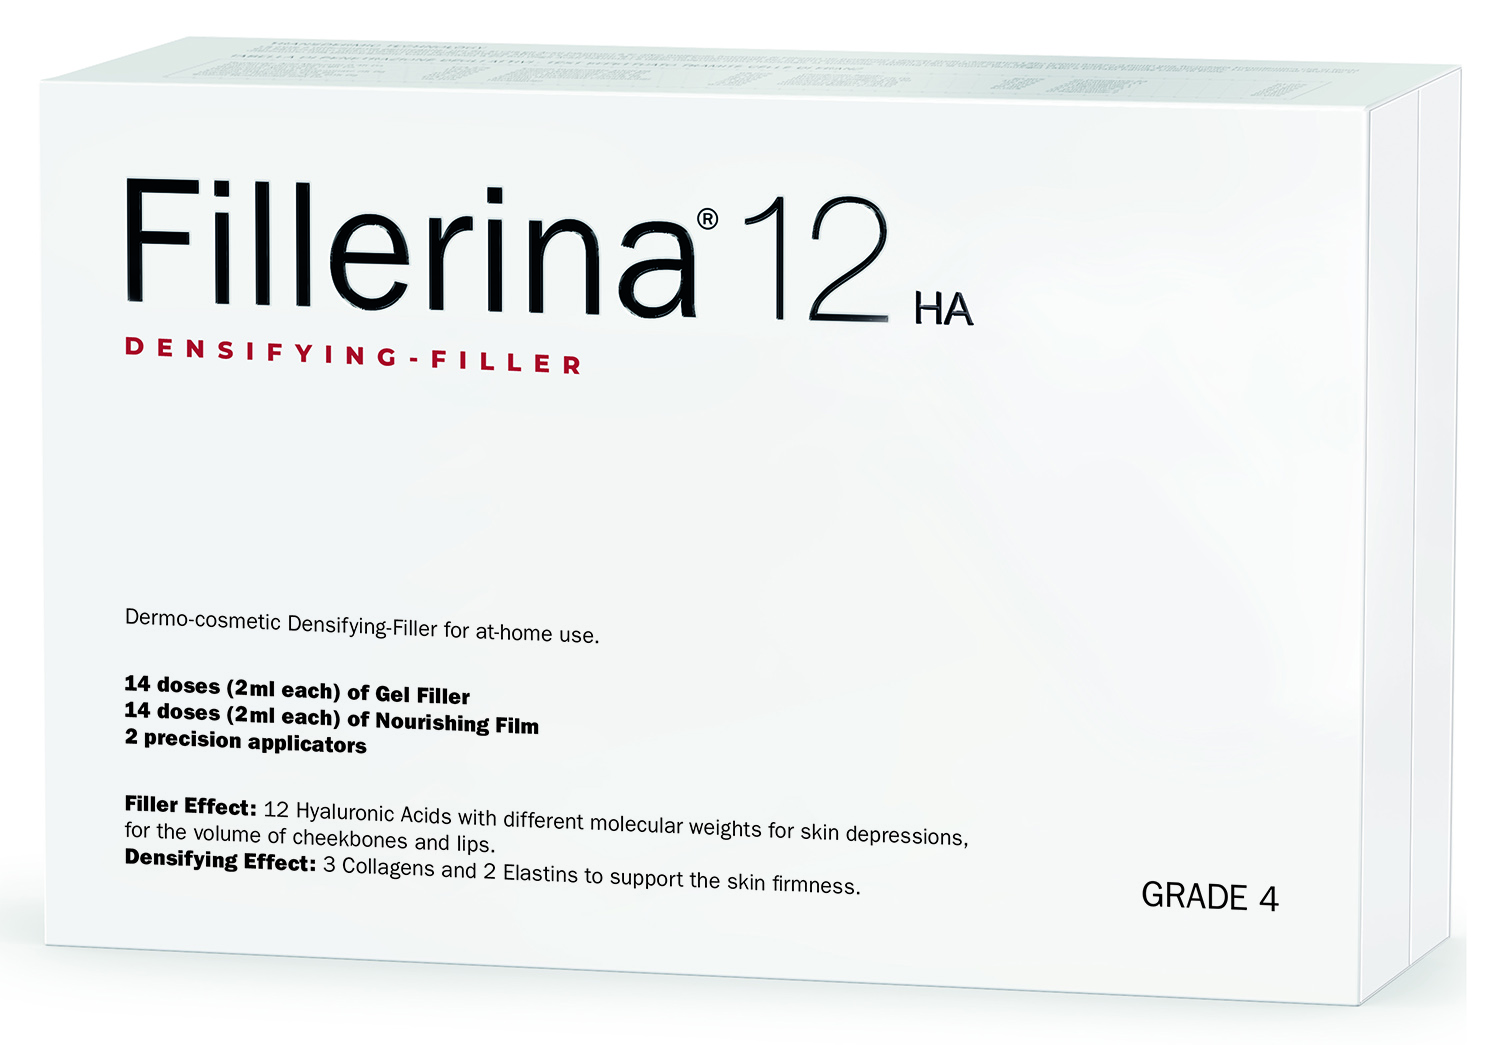 гель филлер для скул fillerina cheekbones grade 4 15 мл Fillerina Дермо-косметический набор с укрепляющим эффектом Intensive уровень 4, 2 флакона х 30 мл (Fillerina, 12 HA Densifying-Filler)